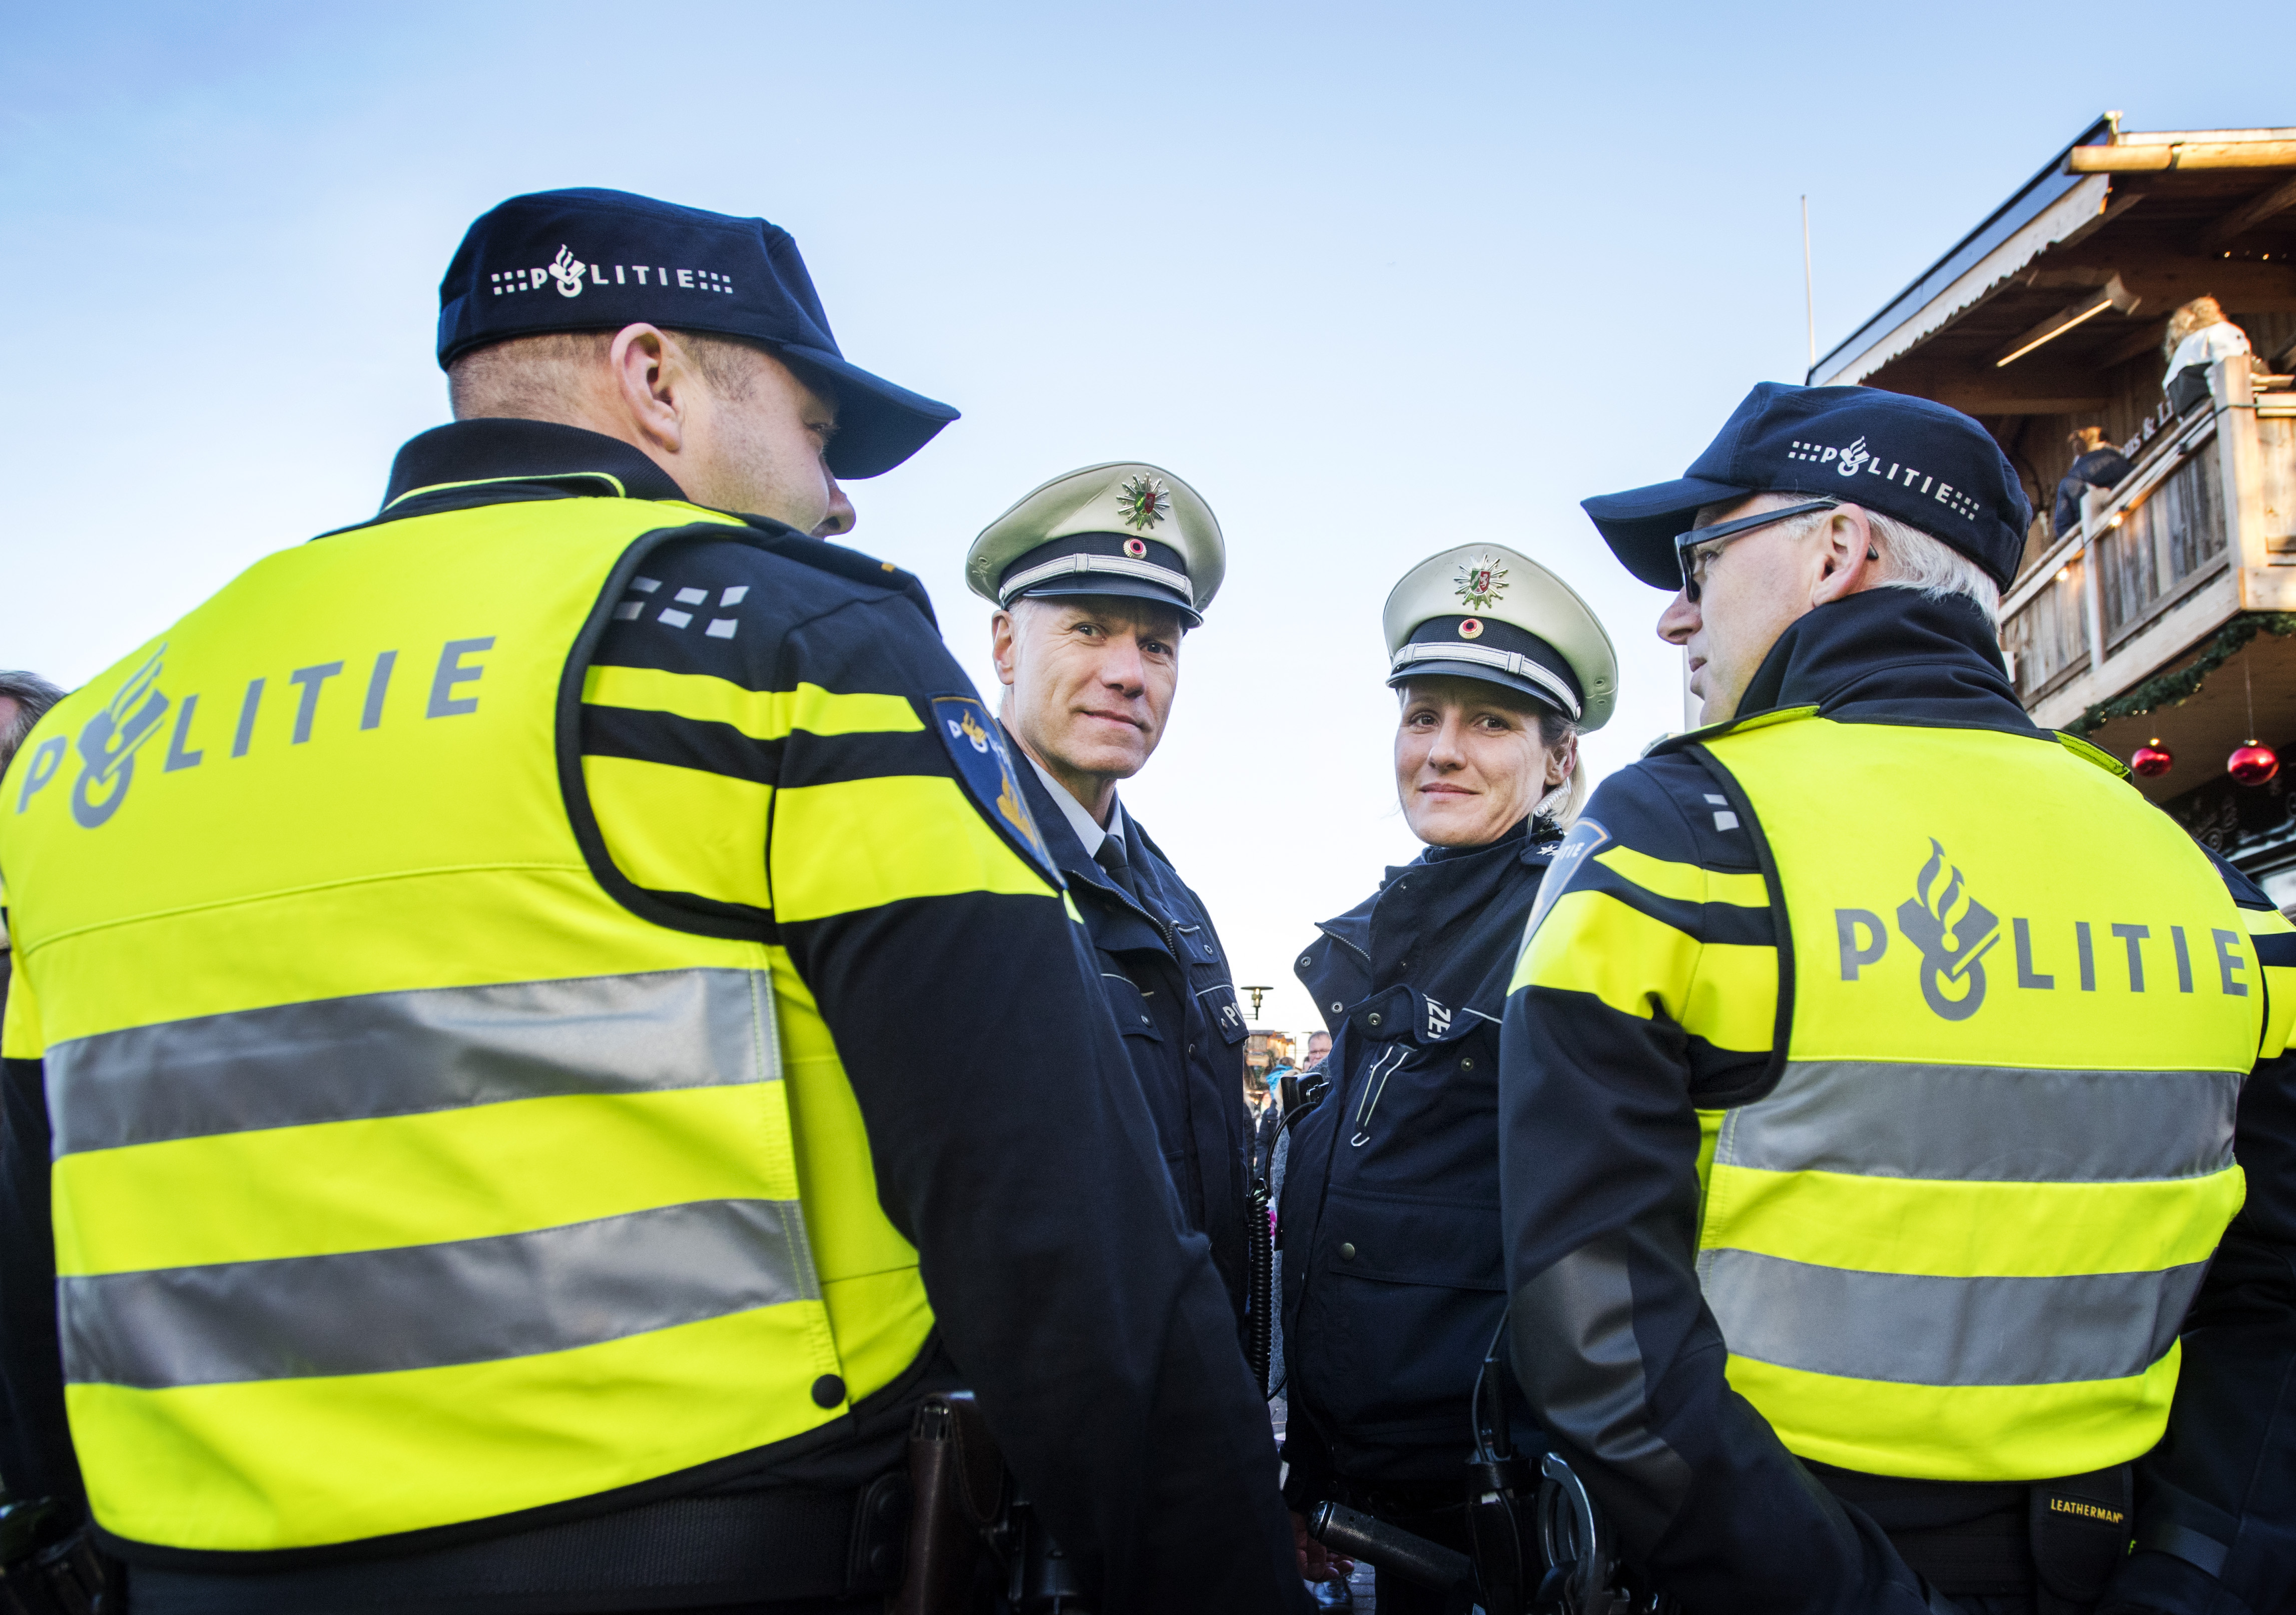 kaas Omzet Piepen Politie wilde 33 duizend agenten nieuwe uniformen geven, maar leveranciers  gingen failliet toen afname tegenviel